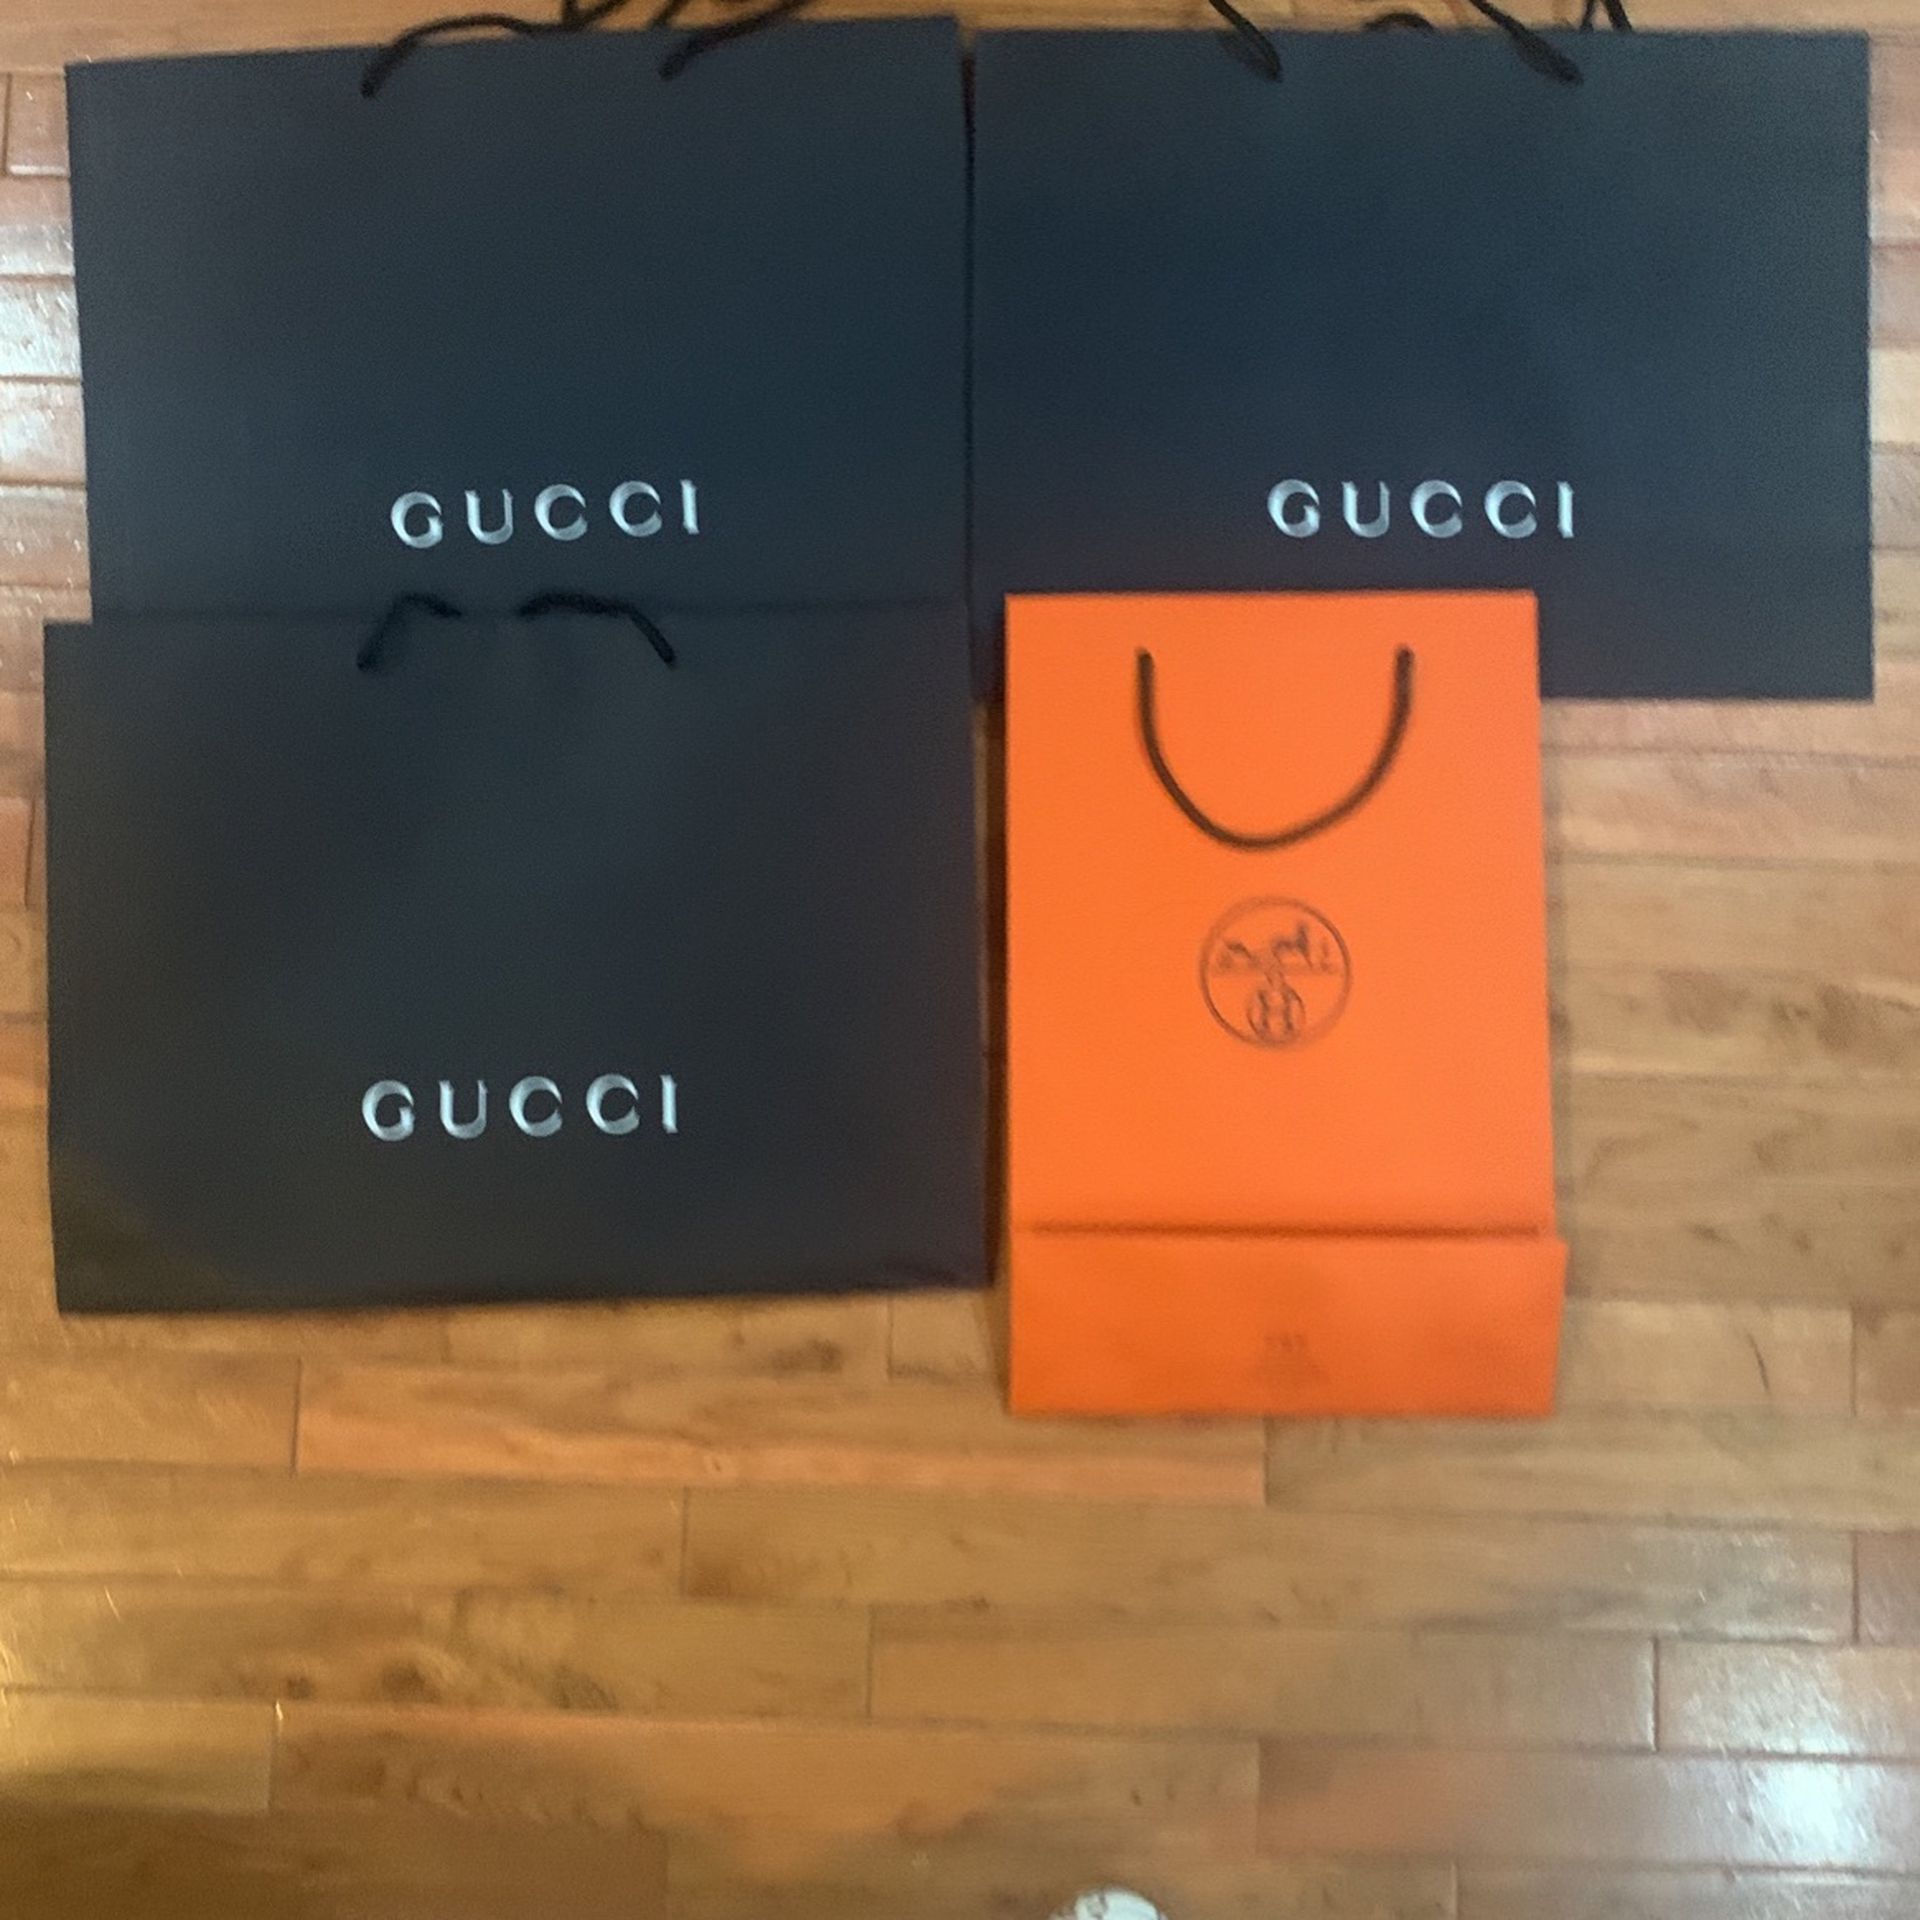 3 Gucci Bags 1 Hermès